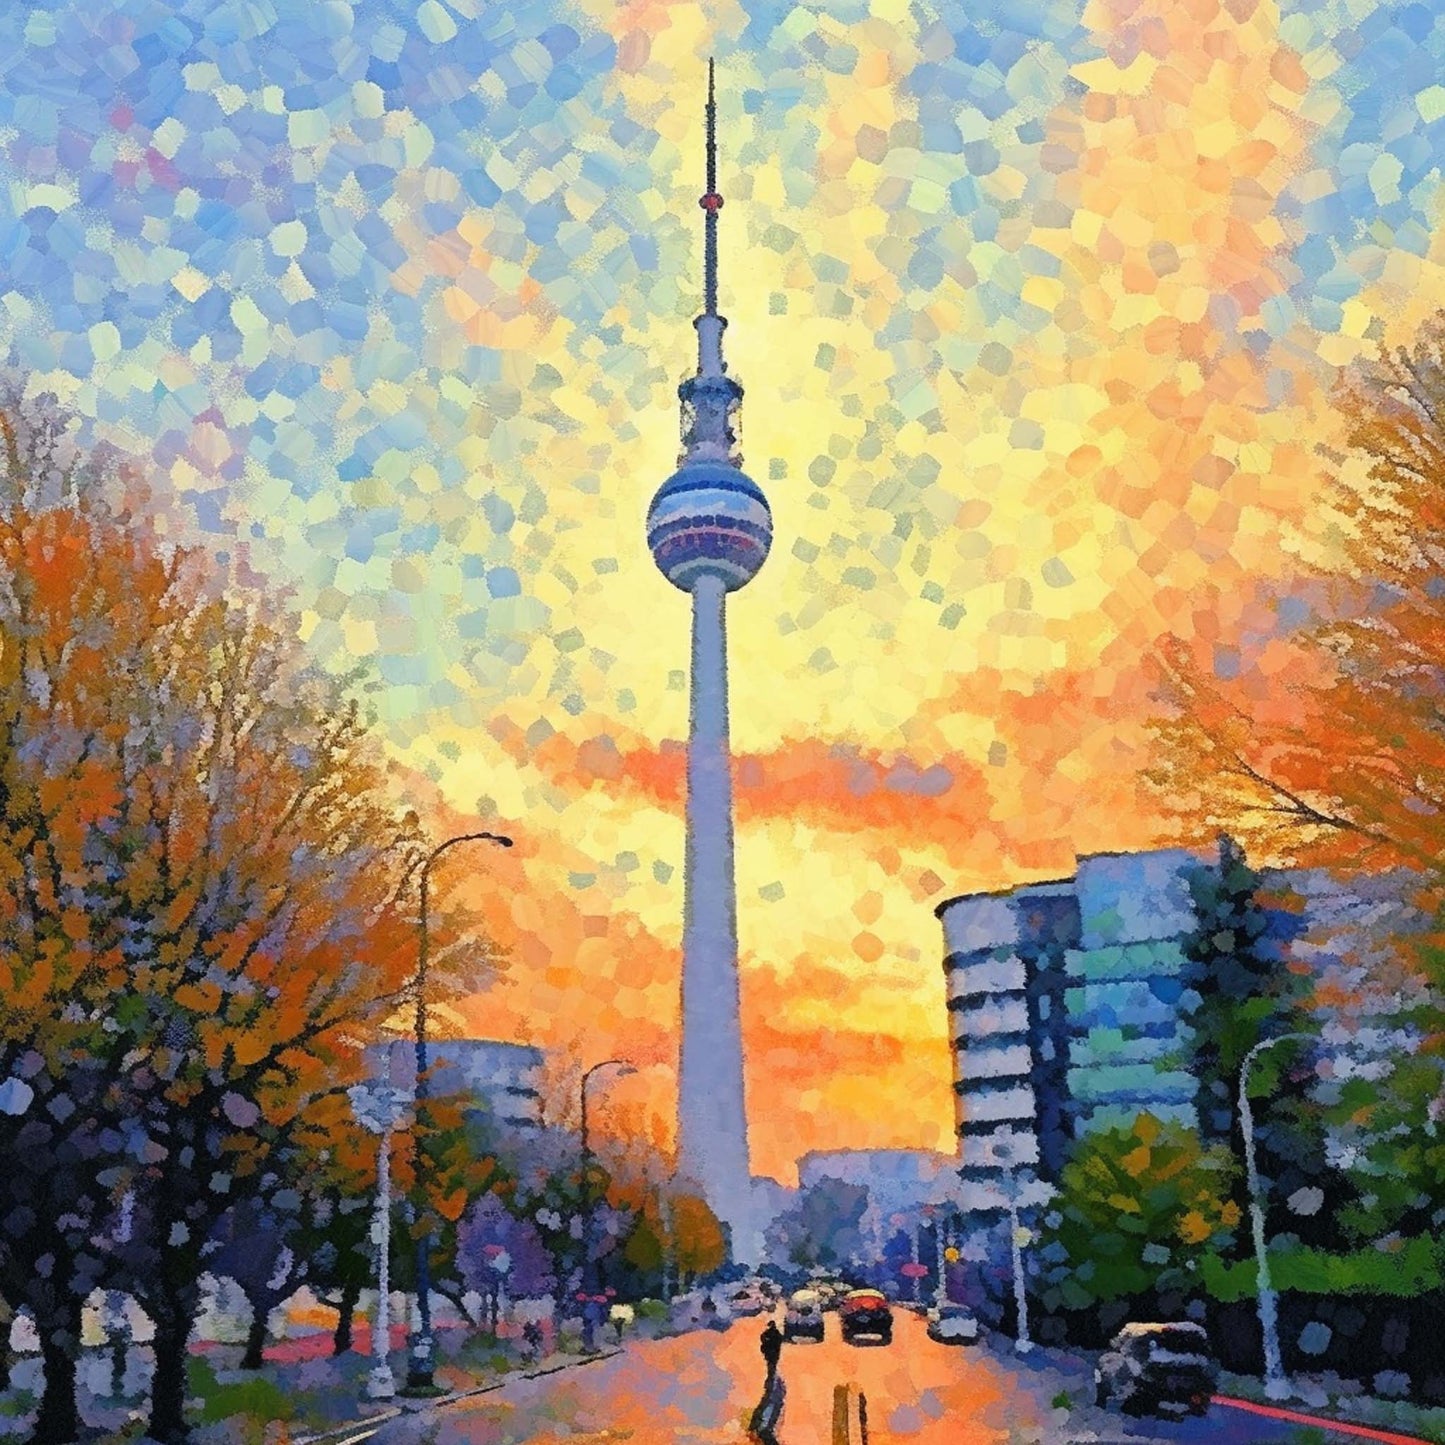 Berlin Fernsehturm - Wandbild in der Stilrichtung des Impressionismus